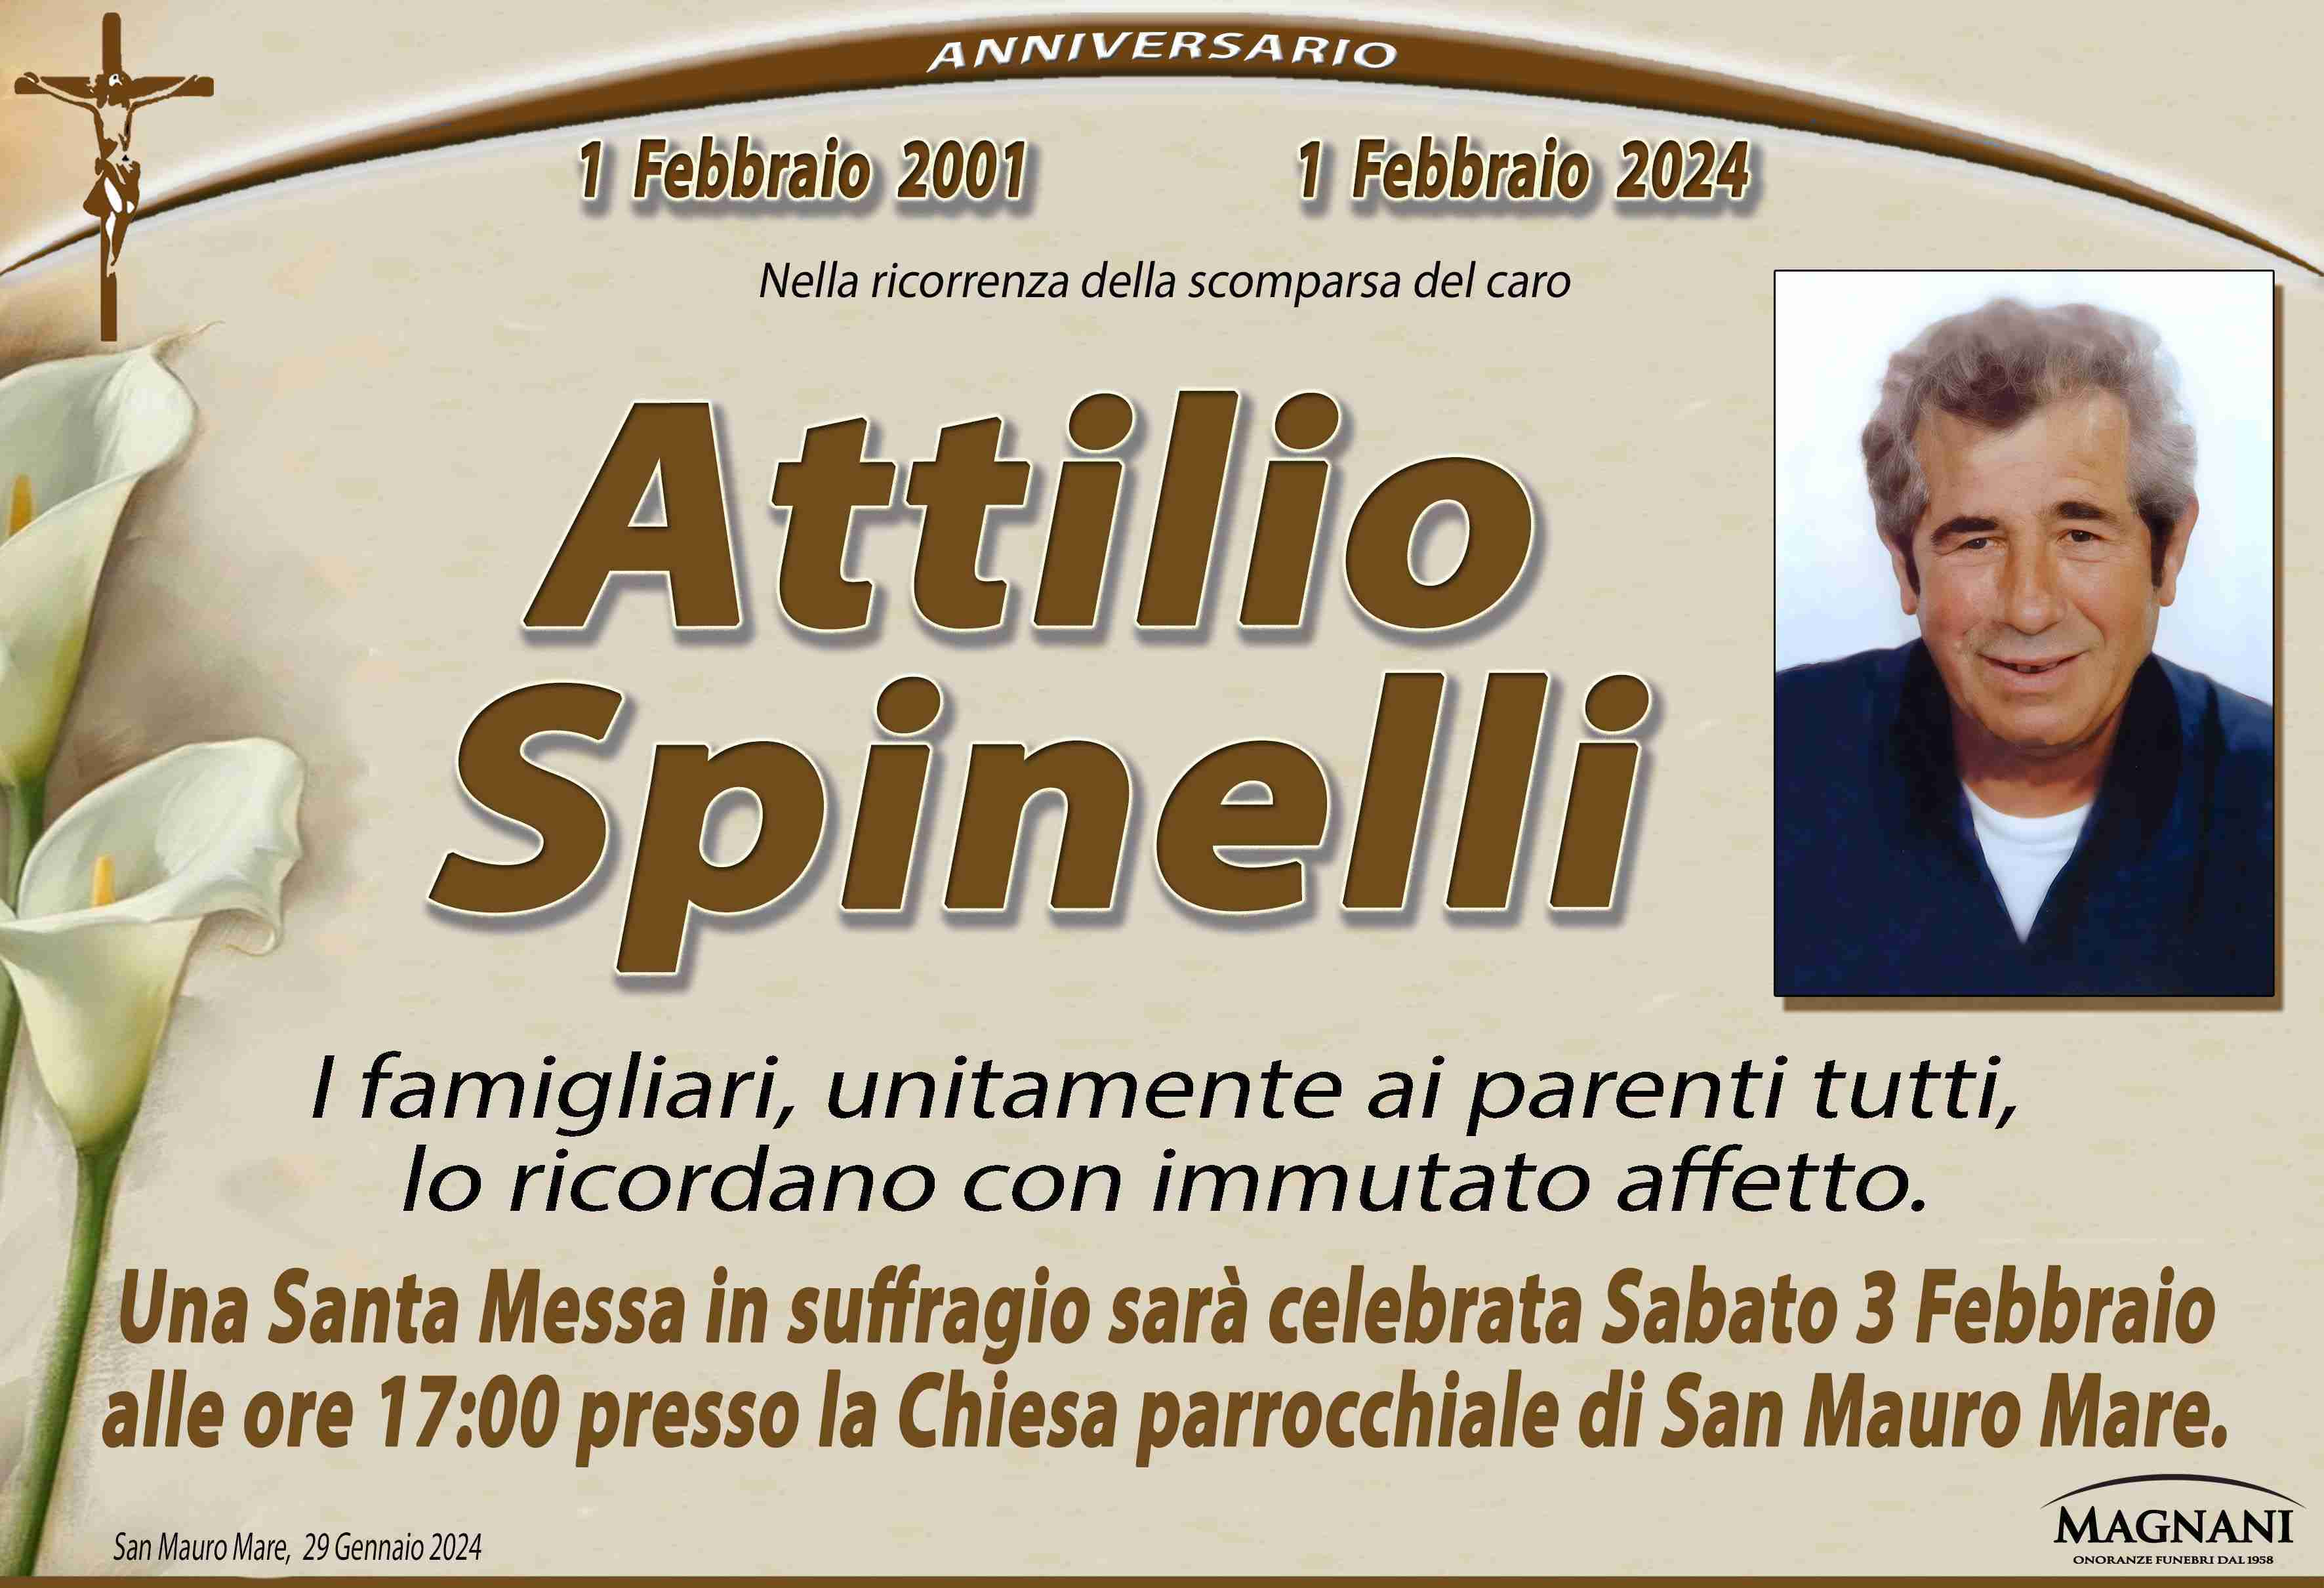 Attilio Spinelli